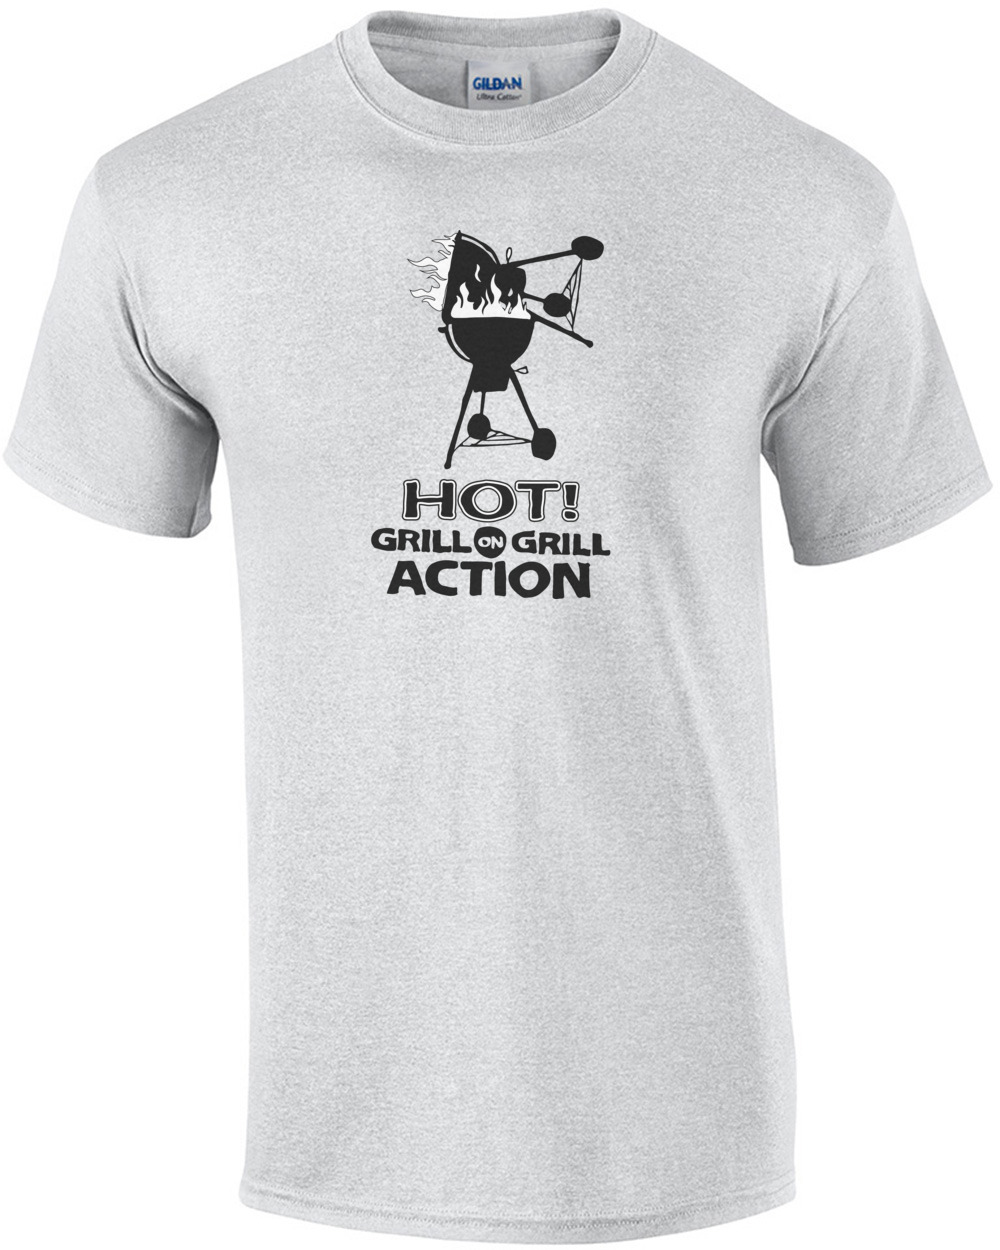 Oorlogsschip ik ben verdwaald Bespreken Hot Grill on grill action - t-shirt | eBay